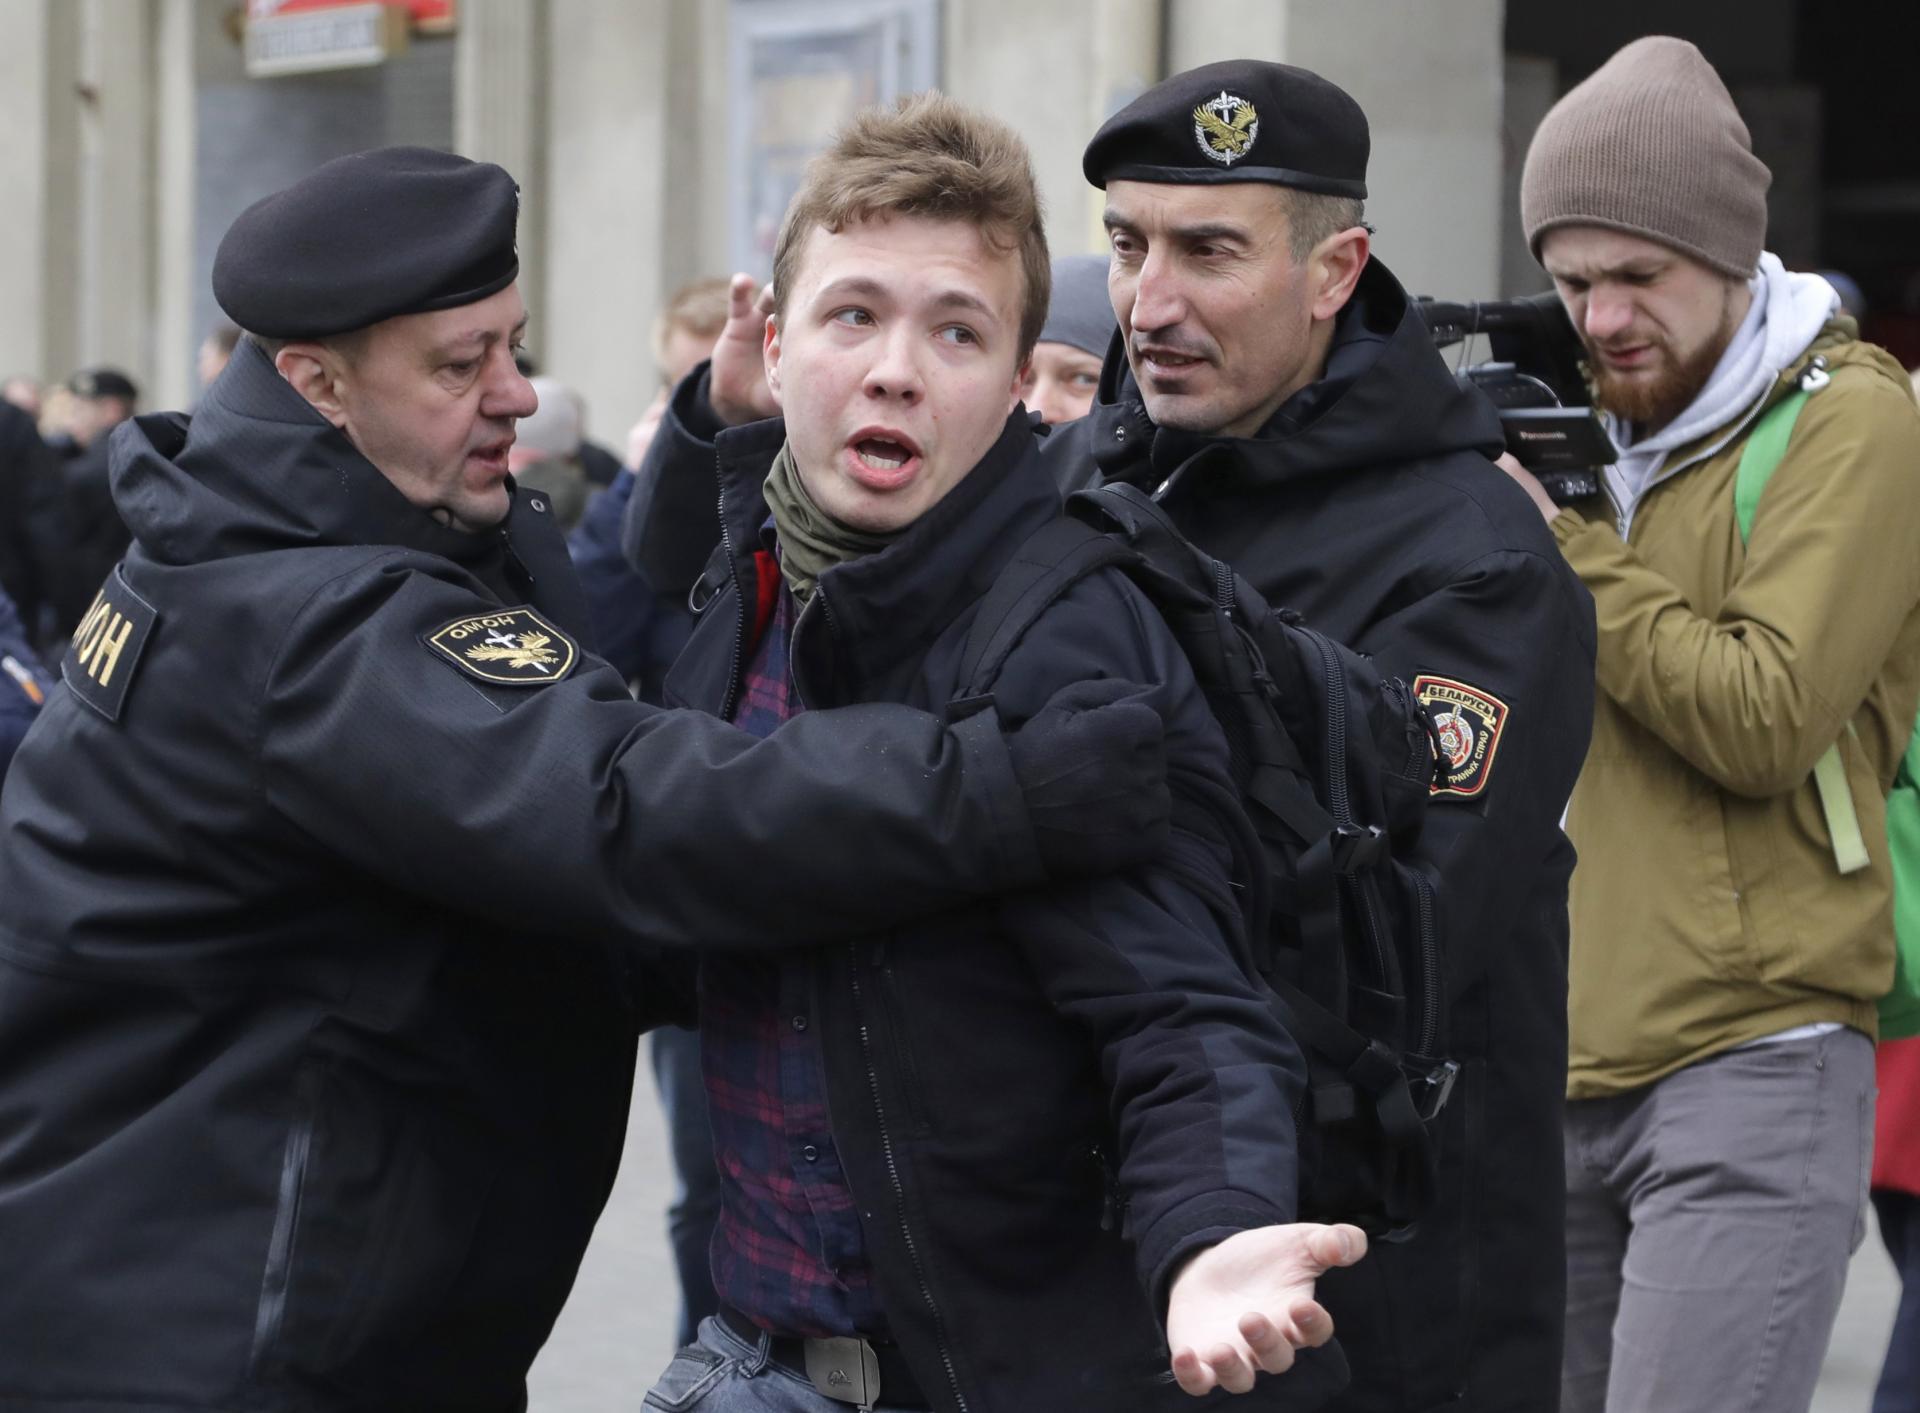 Le journaliste d’opposition biélorusse Pratasevich, condamné à huit ans de prison, a été gracié